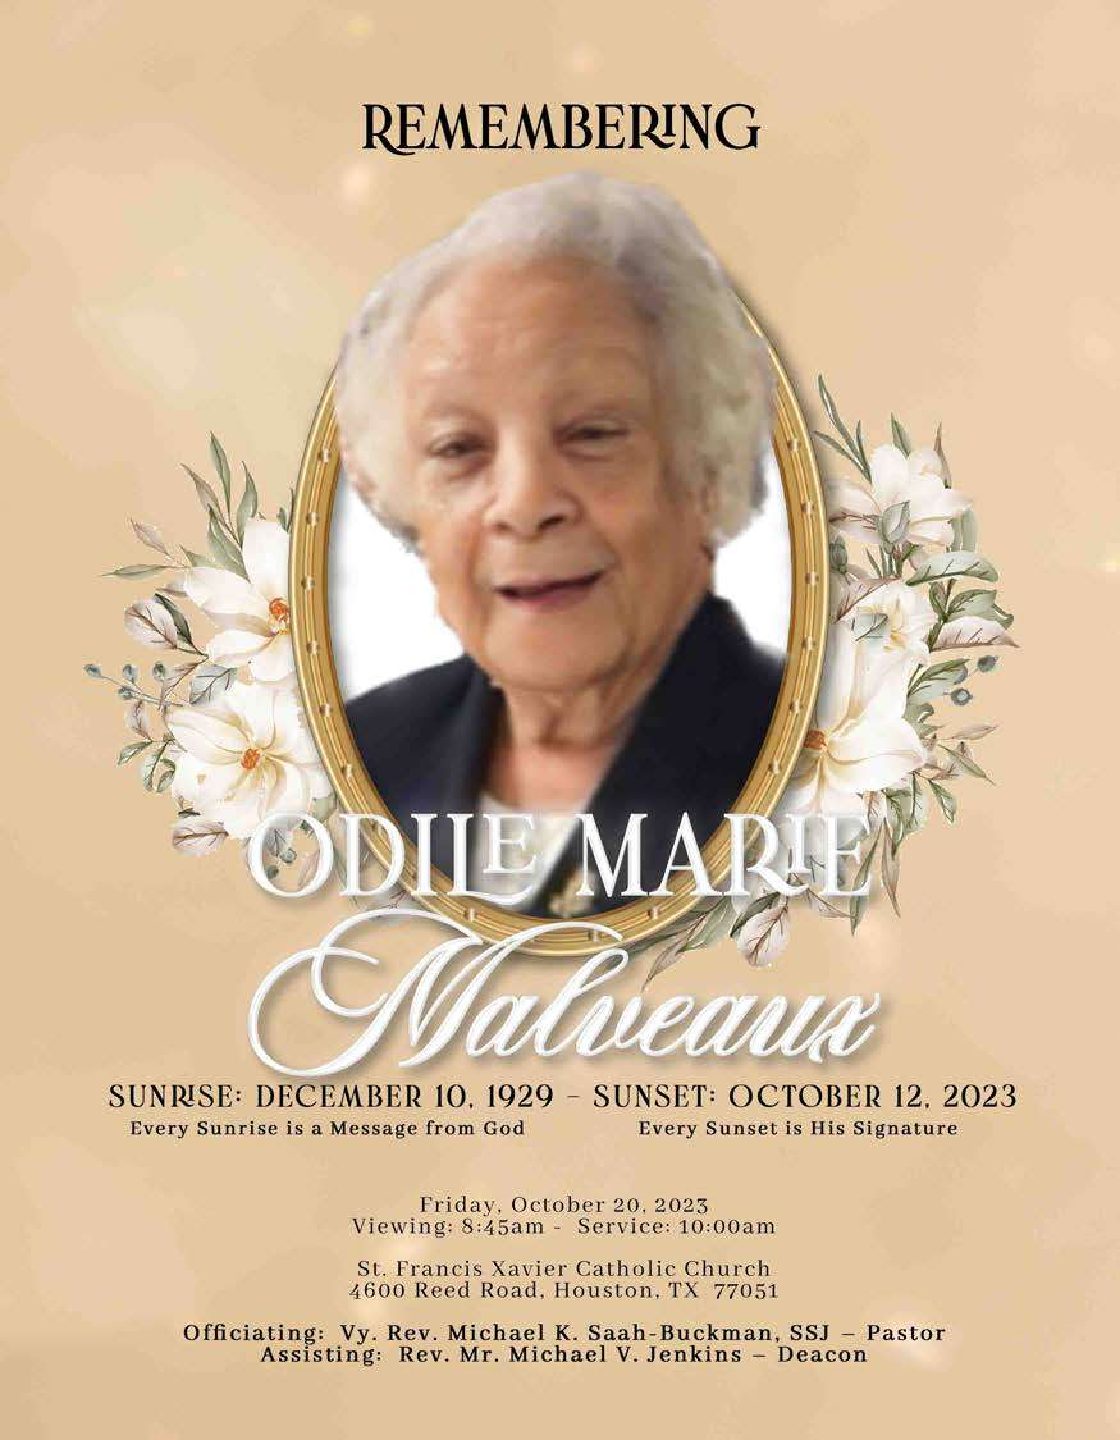 Odile Marie Malveaux 1929 – 2023